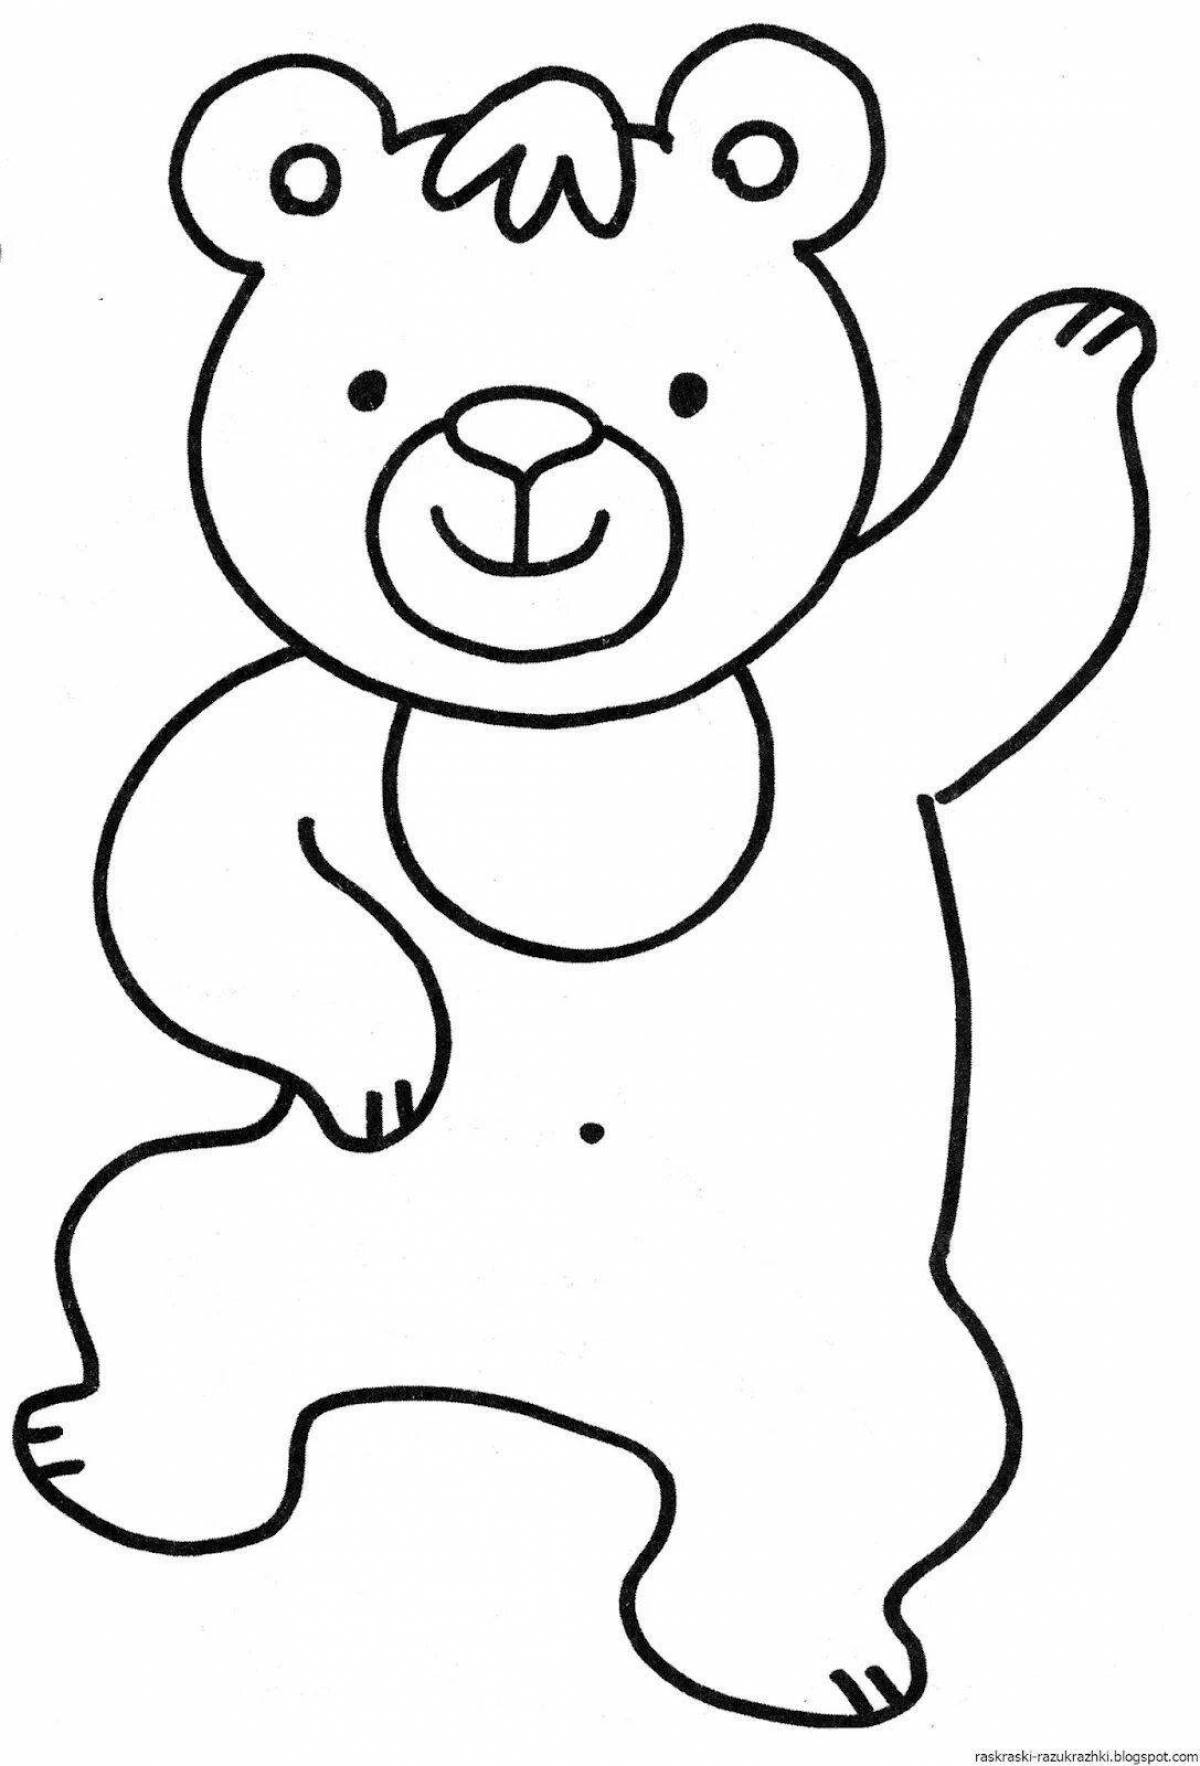 Великолепный медведь-раскраска для детей